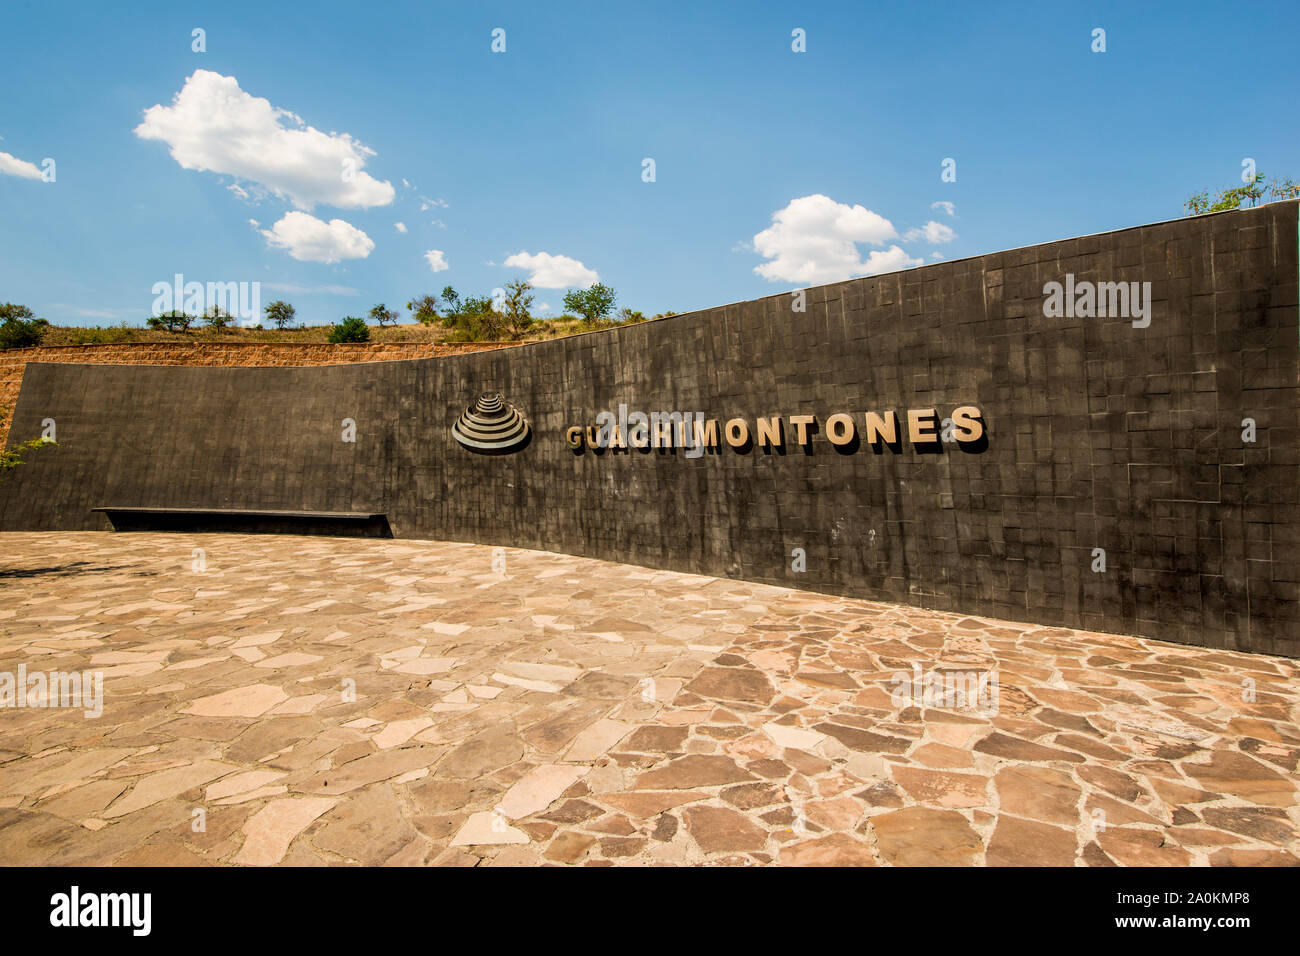 Ingresso alle antiche rovine alla zona archeologica di Guachimontones, Teuchitlan, Jalisco, Messico. Foto Stock